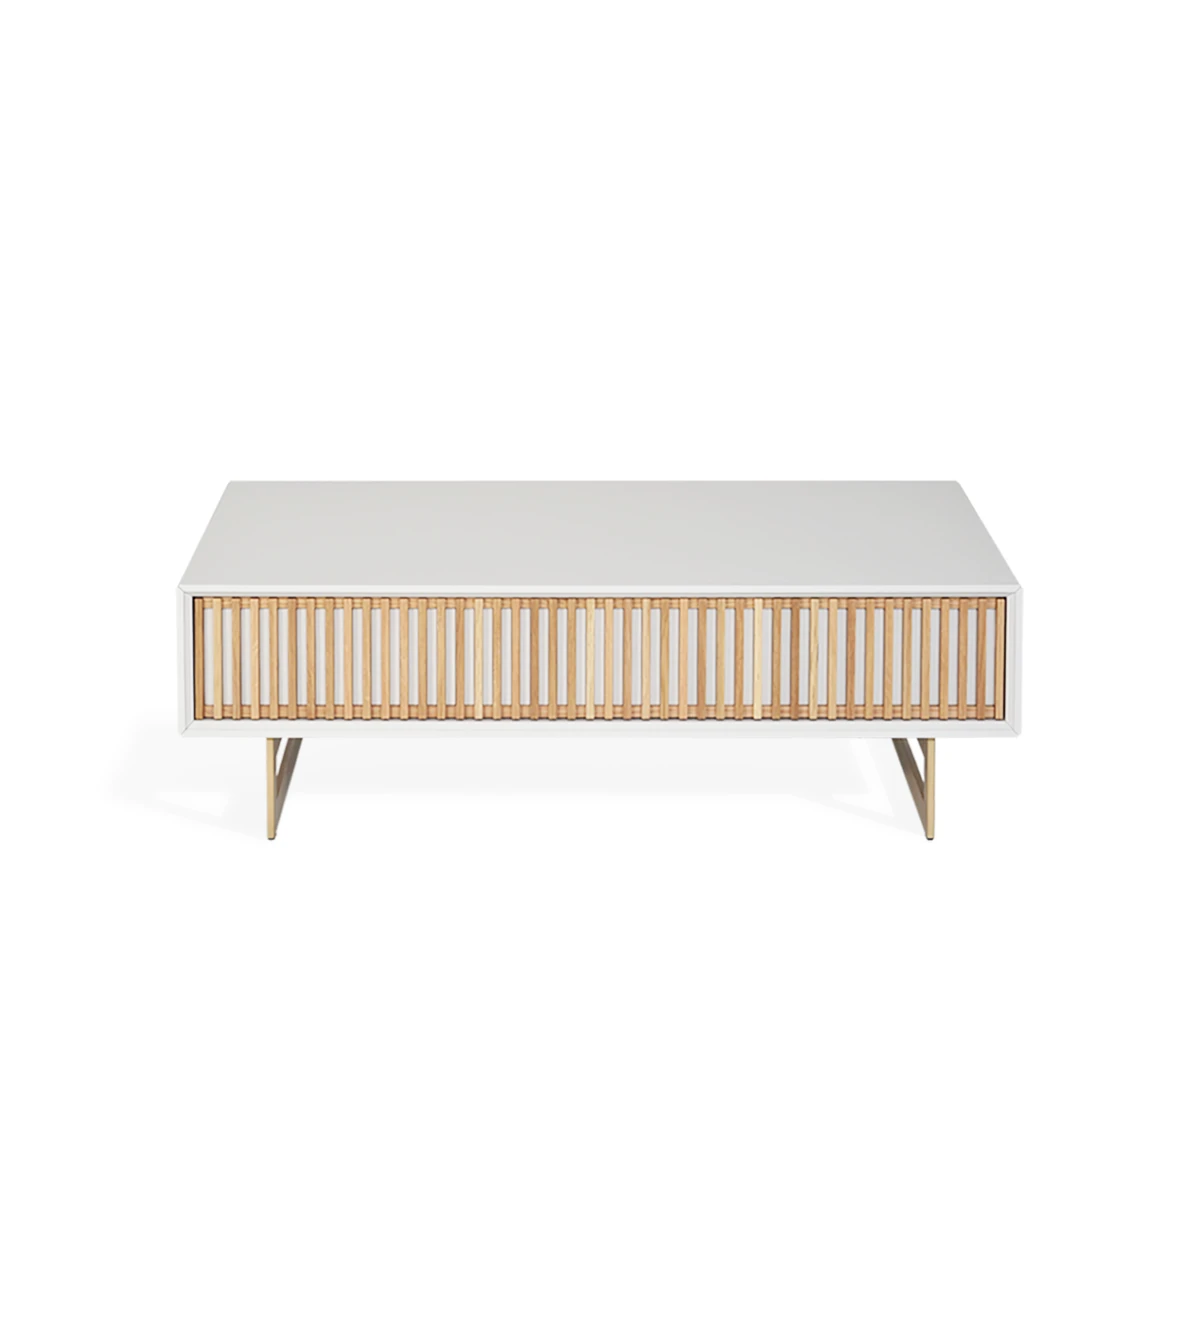 Table basse Tokyo rectangulaire, 1 tiroir en chêne naturel, structure laquée perle et pieds en métal laqué doré, 110 x 65 cm.